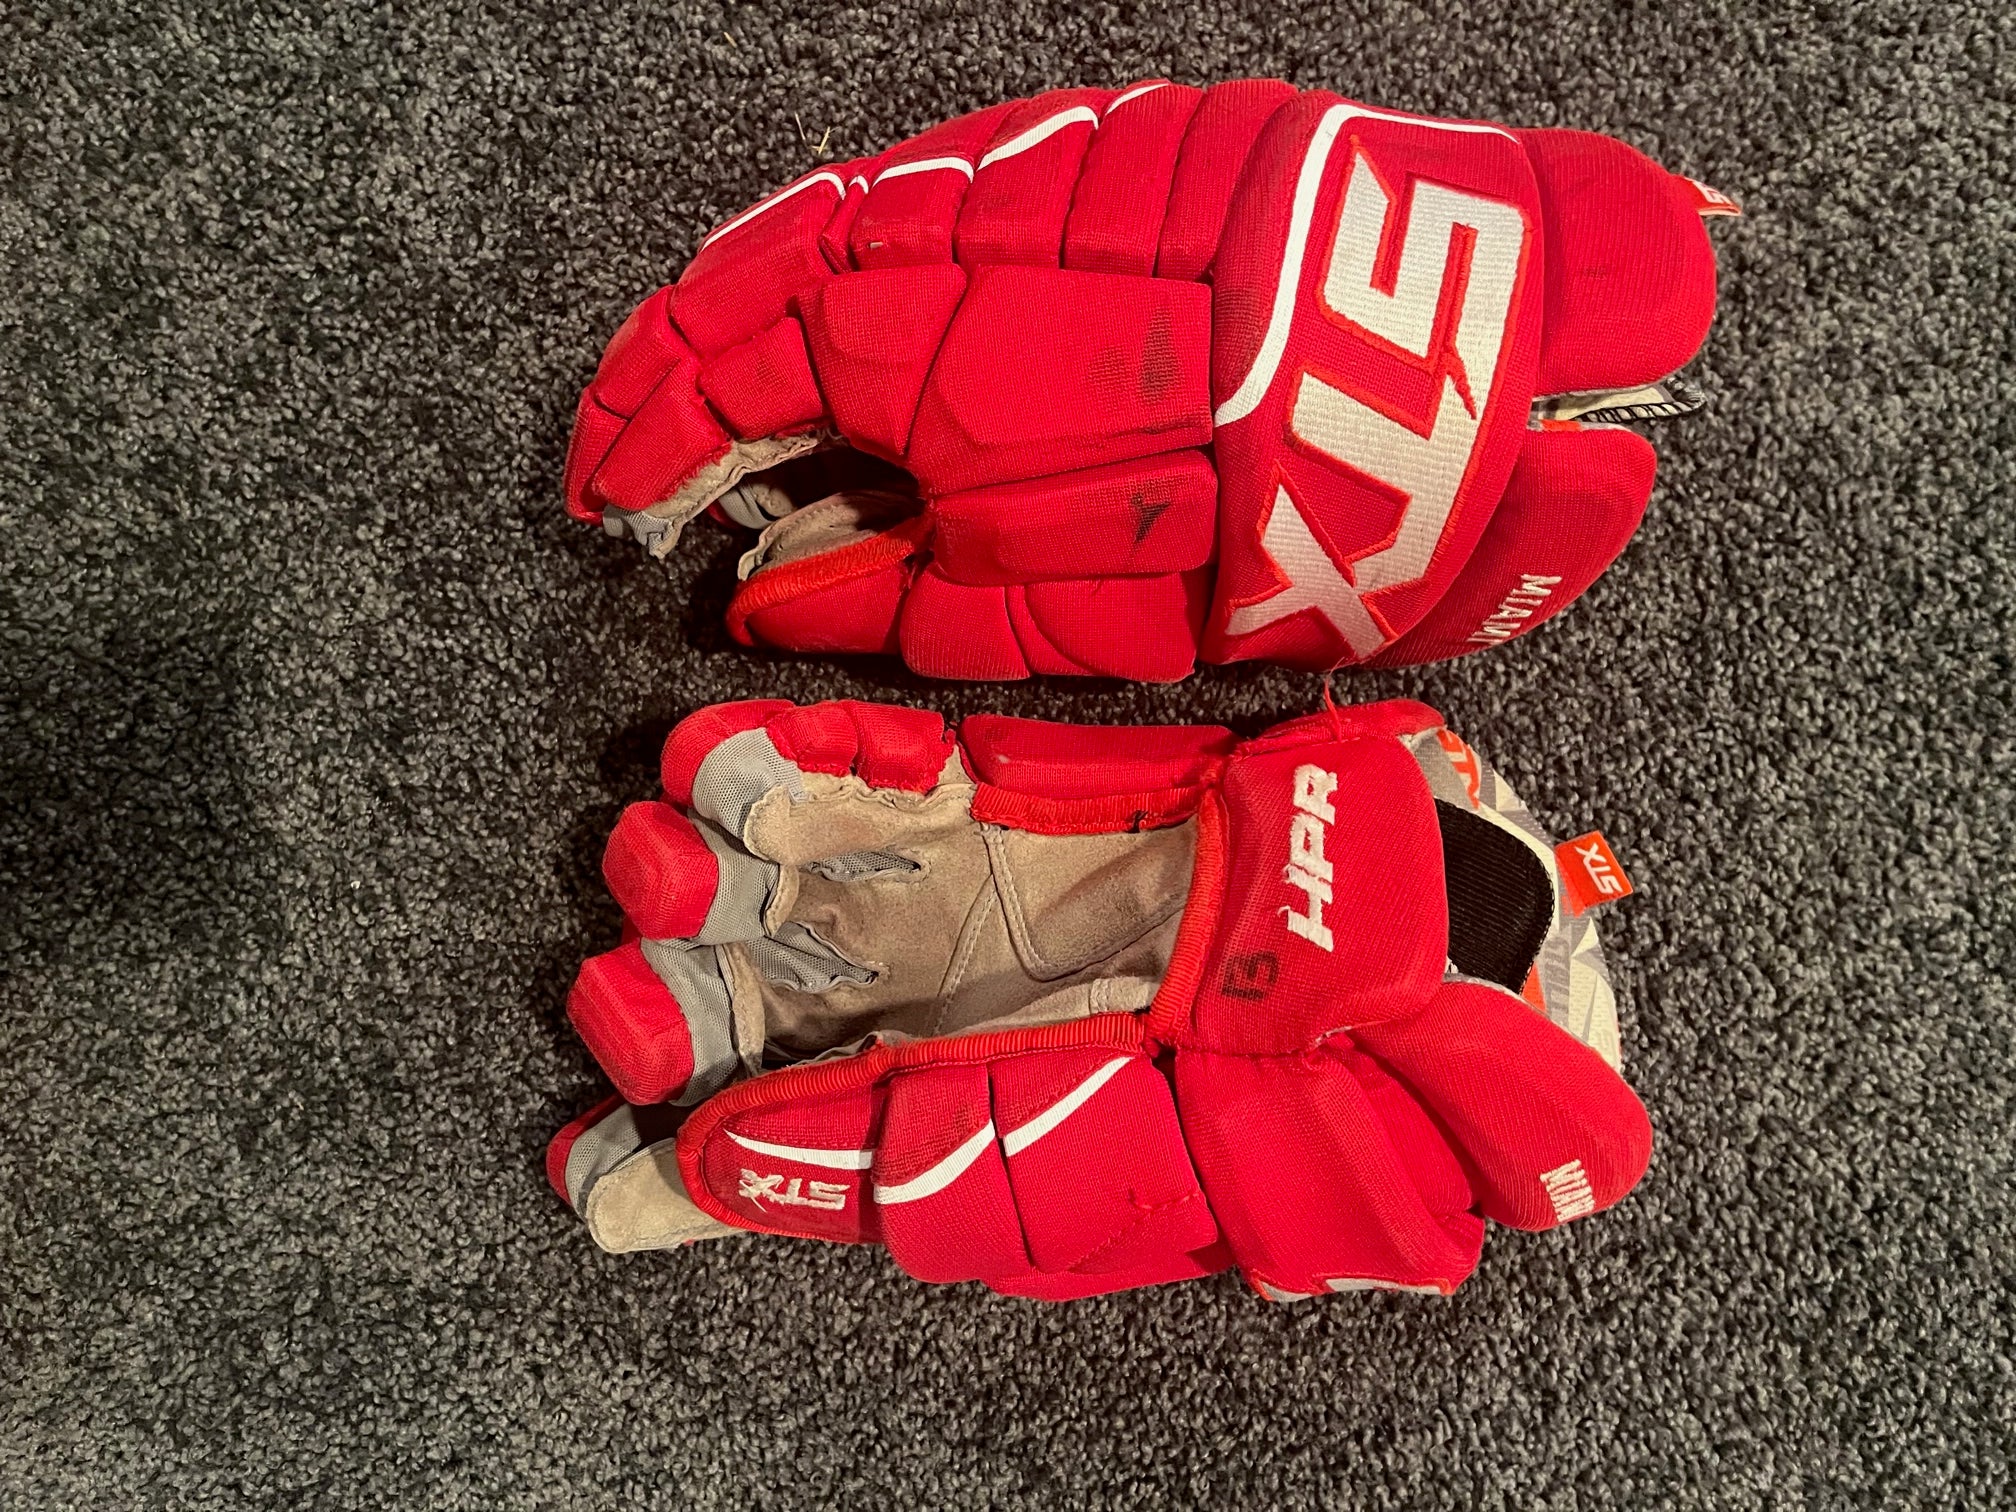 STX Stallion 500 Pro Stock Custom Hockey Gloves 14 Tampa Bay Lightning NHL